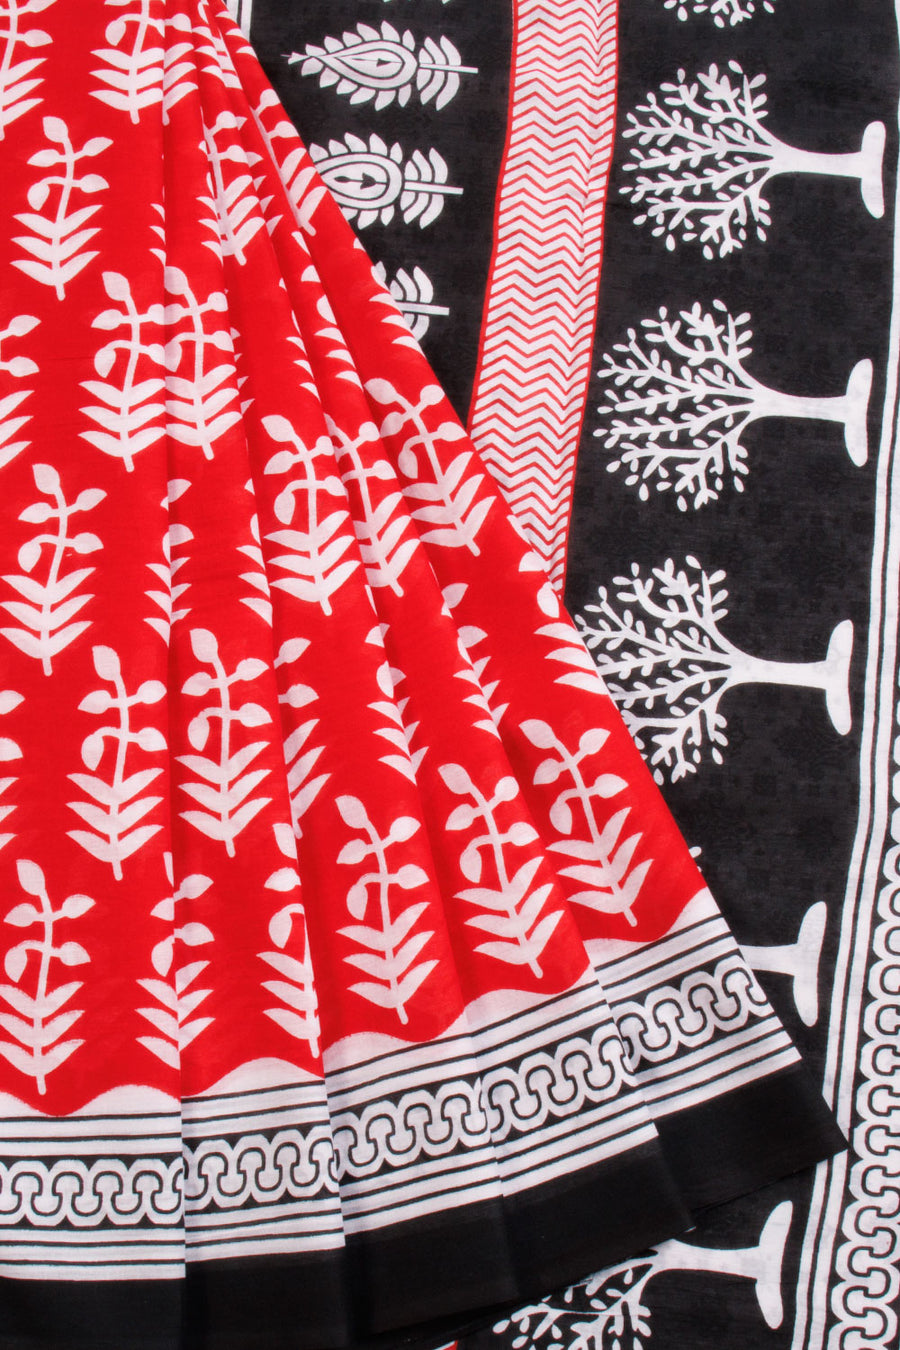 Red Hand Block Printed Cotton Saree 10069079 - Avishya